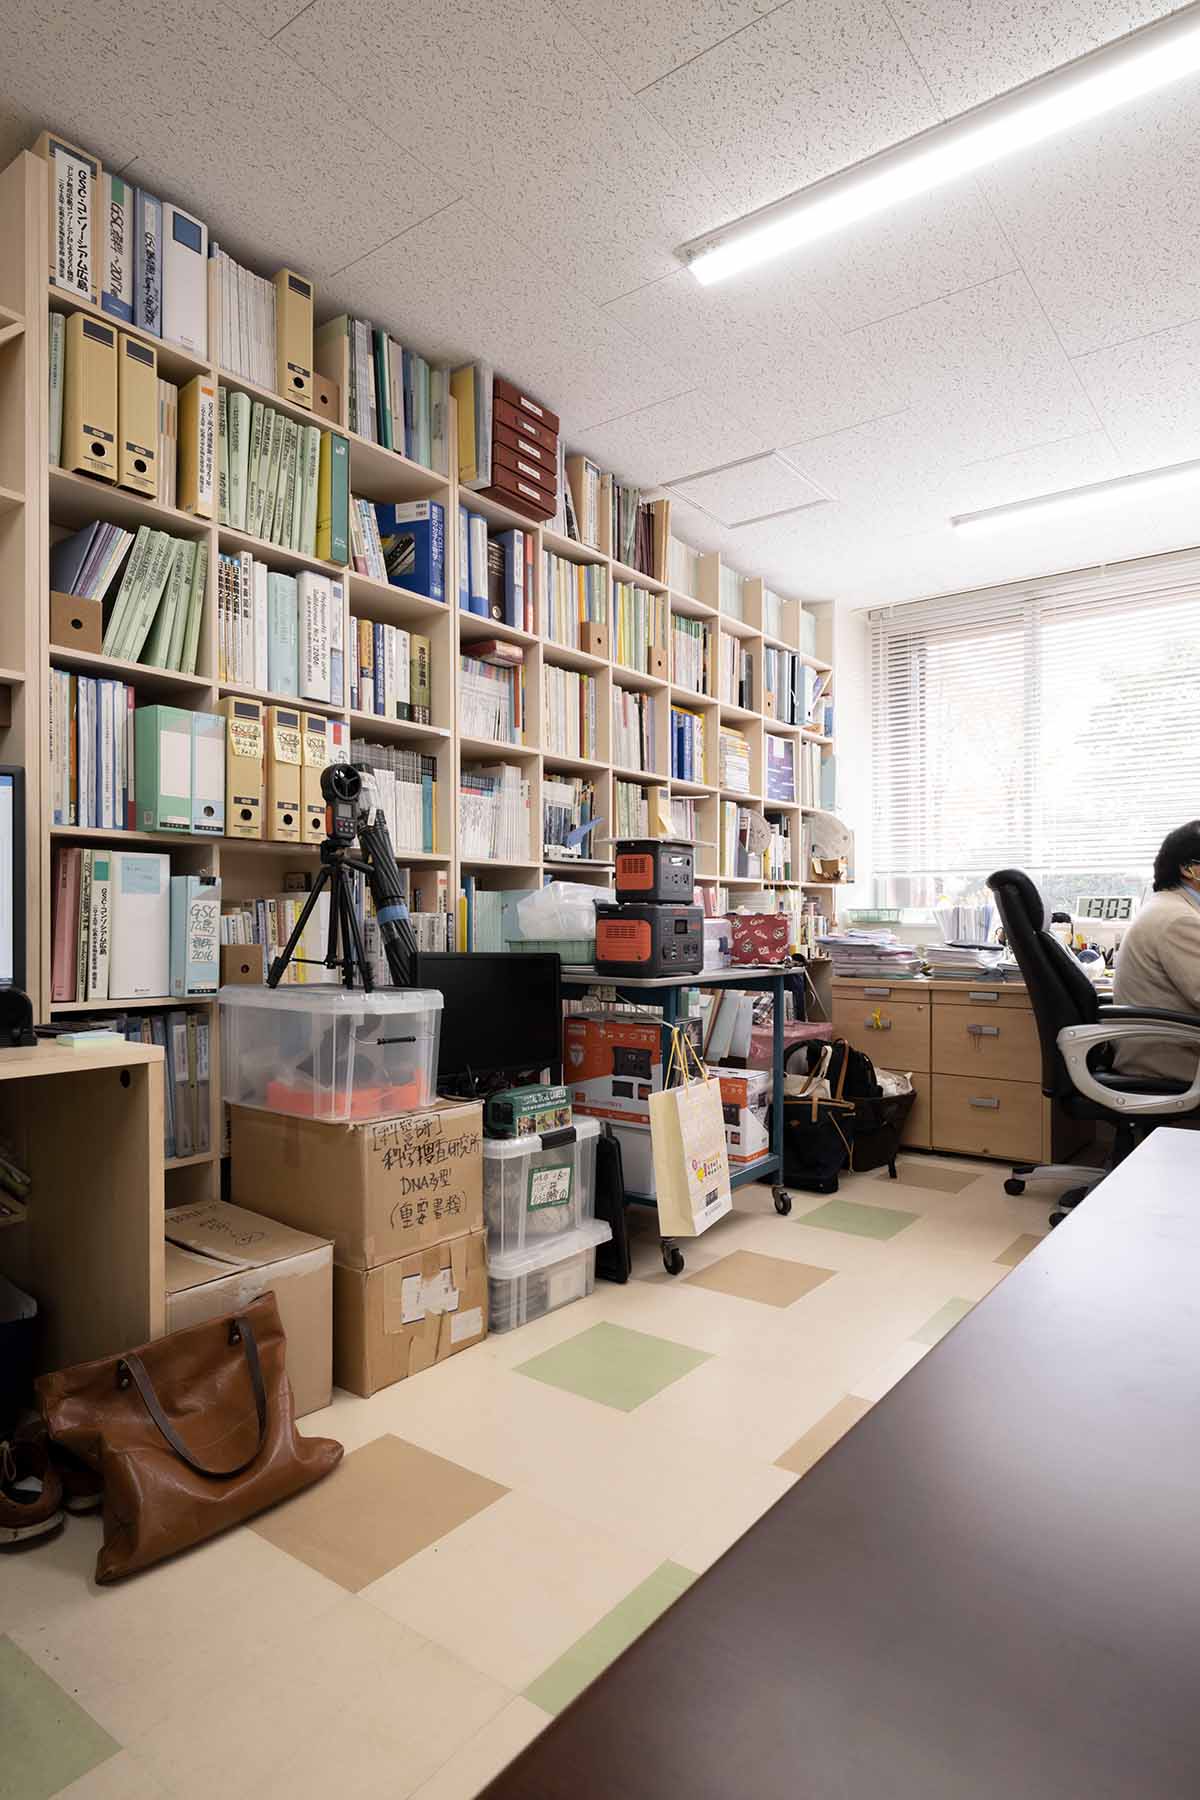 新しい研究室の壁面に | 壁一面の本棚 奥行350mm / Shelf (No.137) | マルゲリータお客様の使用例 大学院 研究室 書棚 ブックシェルフ